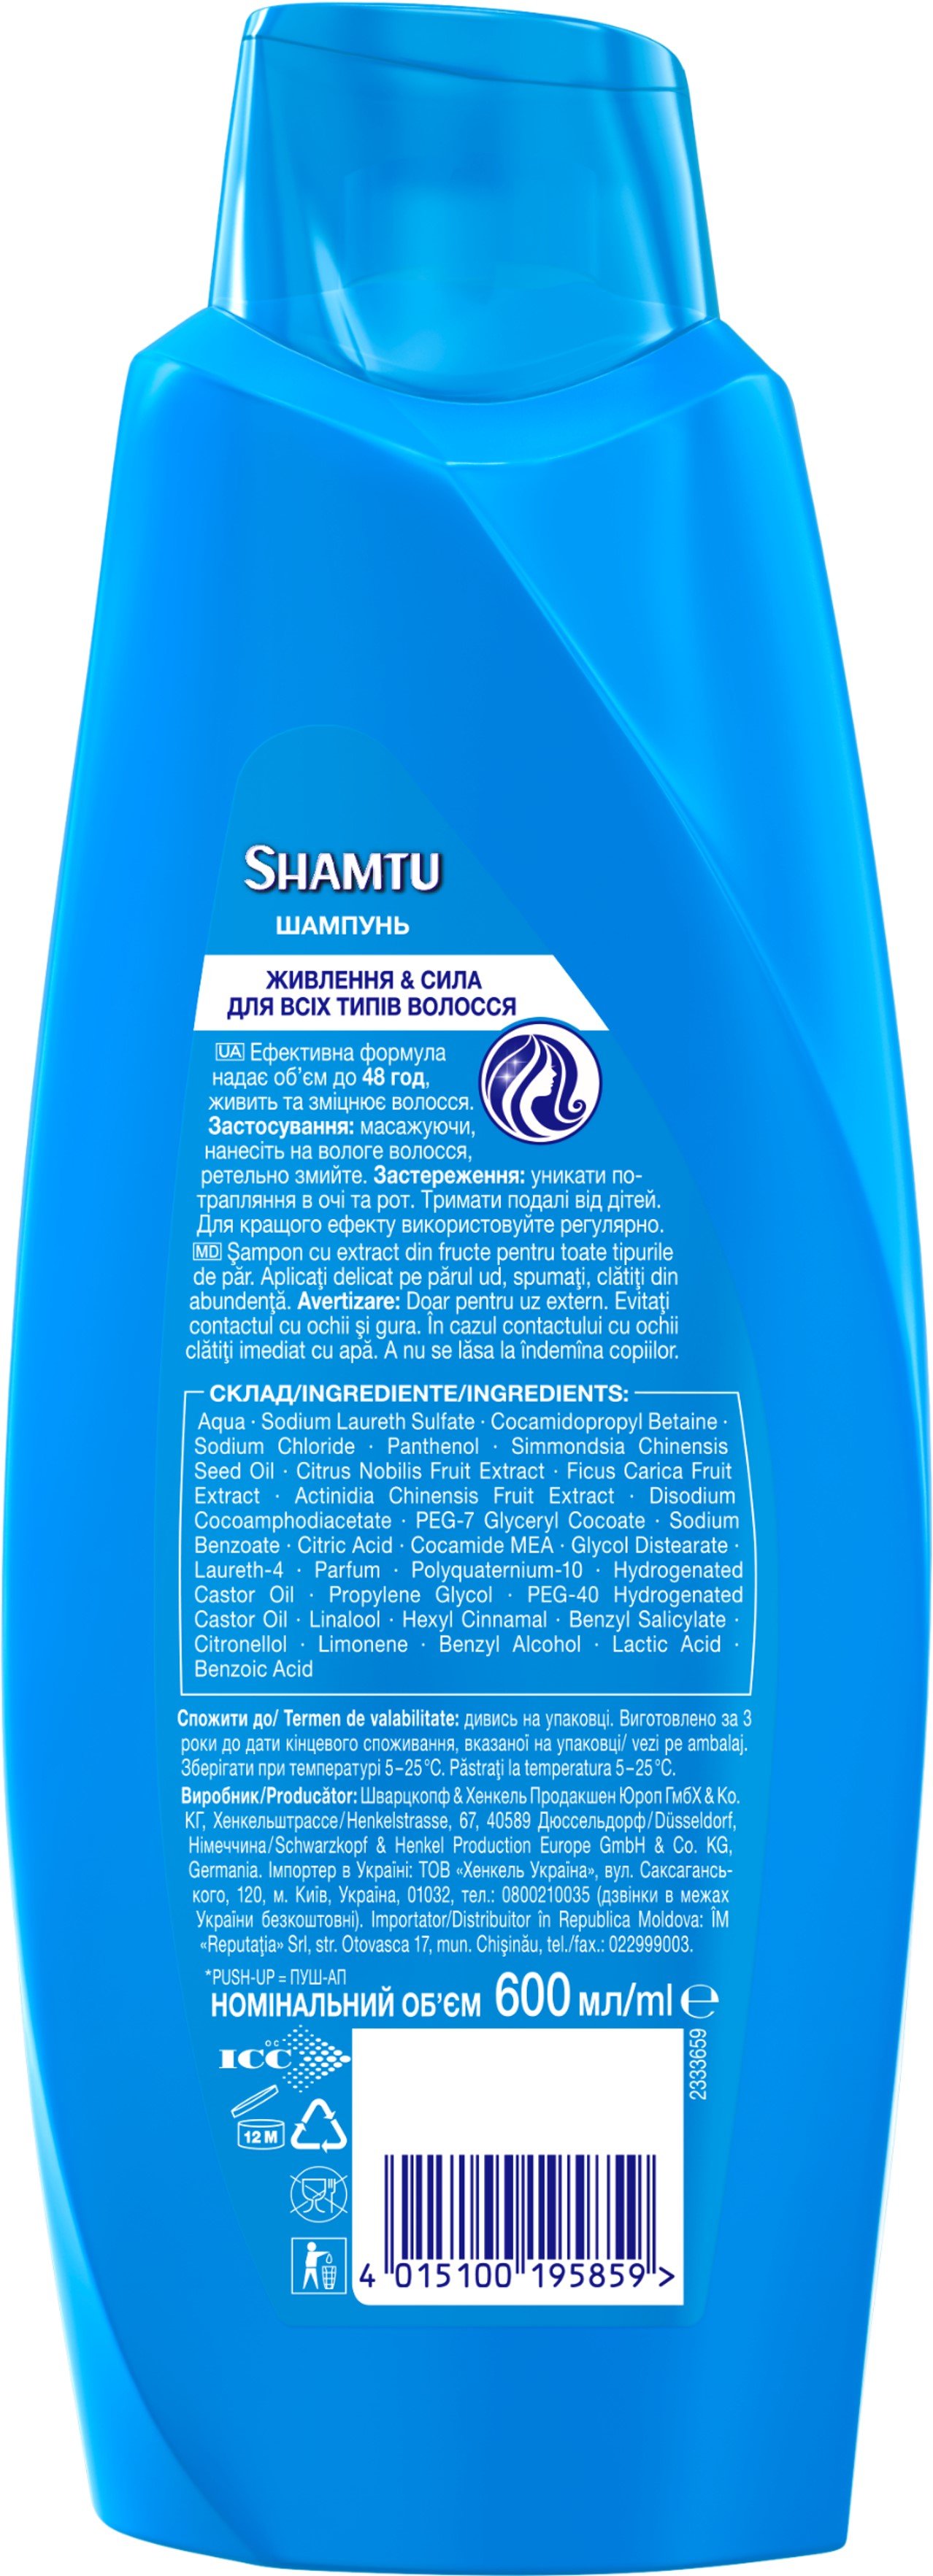 Шампунь Shamtu Питание и Сила, c экстрактами фруктов, для всех типов волос, 600 мл - фото 3